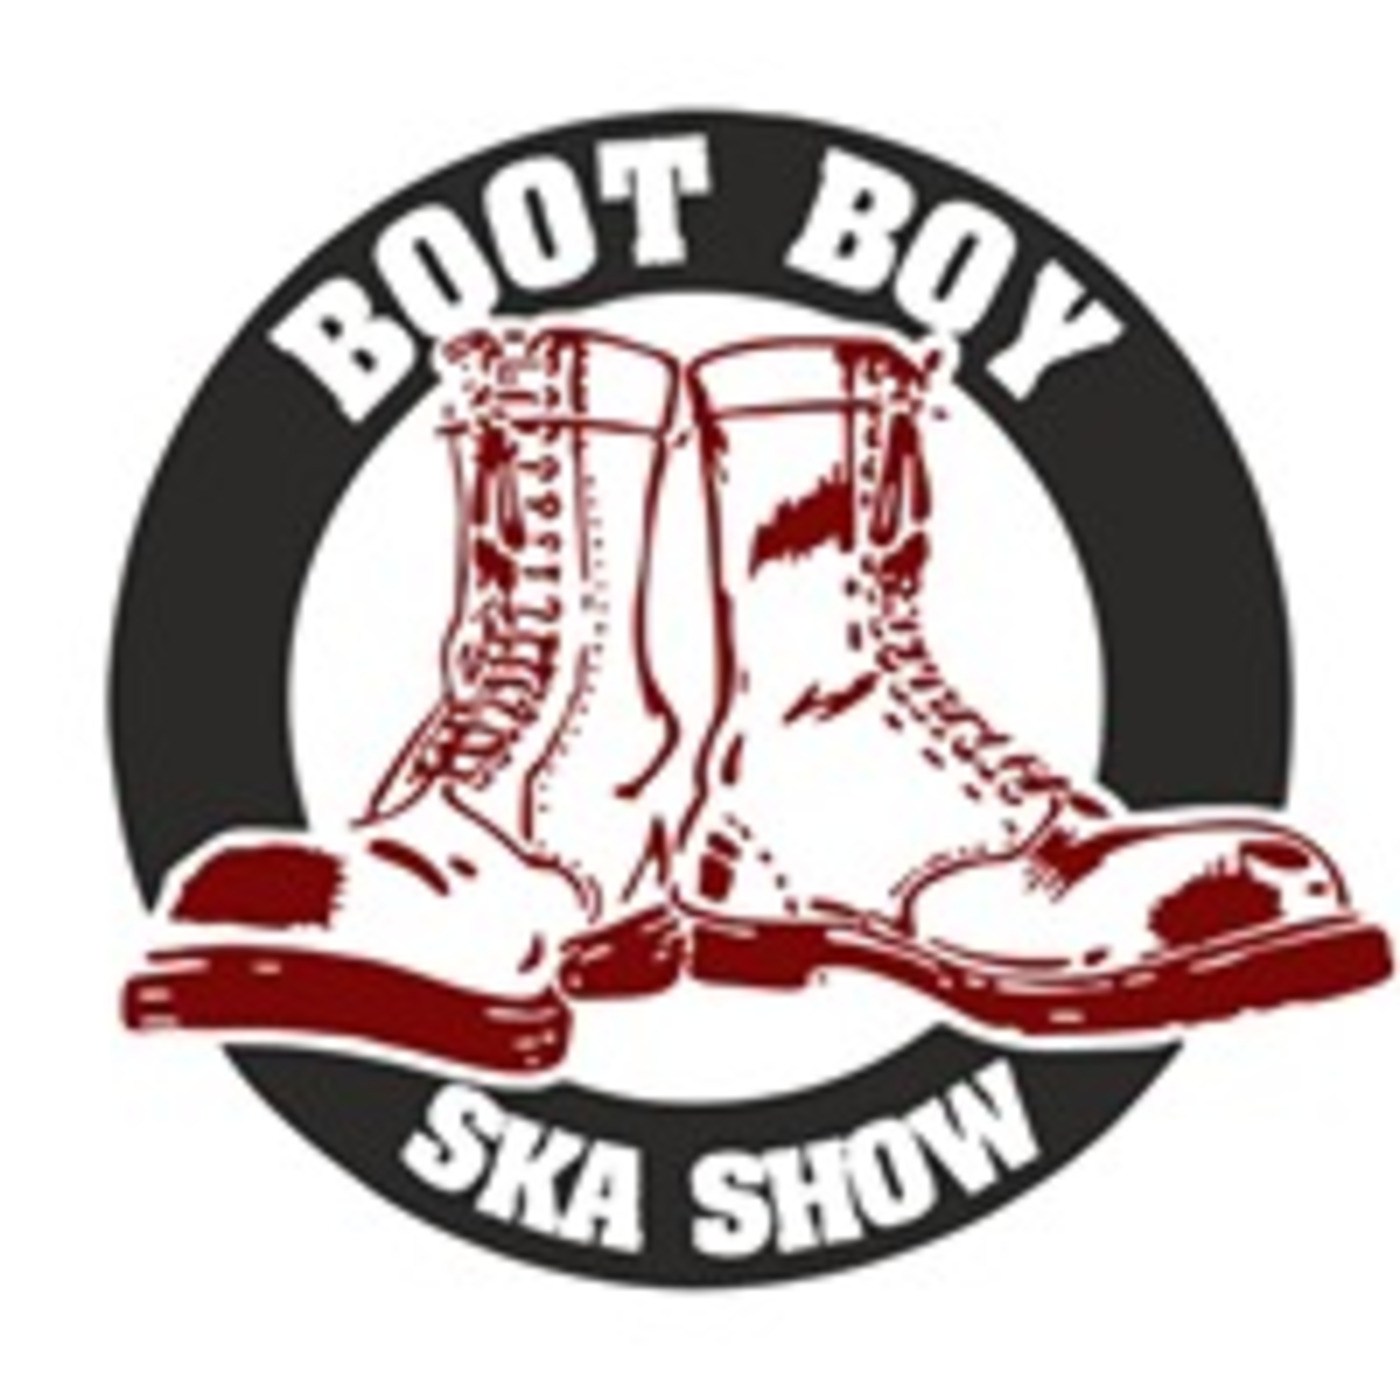 Episode 2759: The Boot Boy Ska Show With Geoff Longbar 14th November 2022  On www.bootboyradio.net